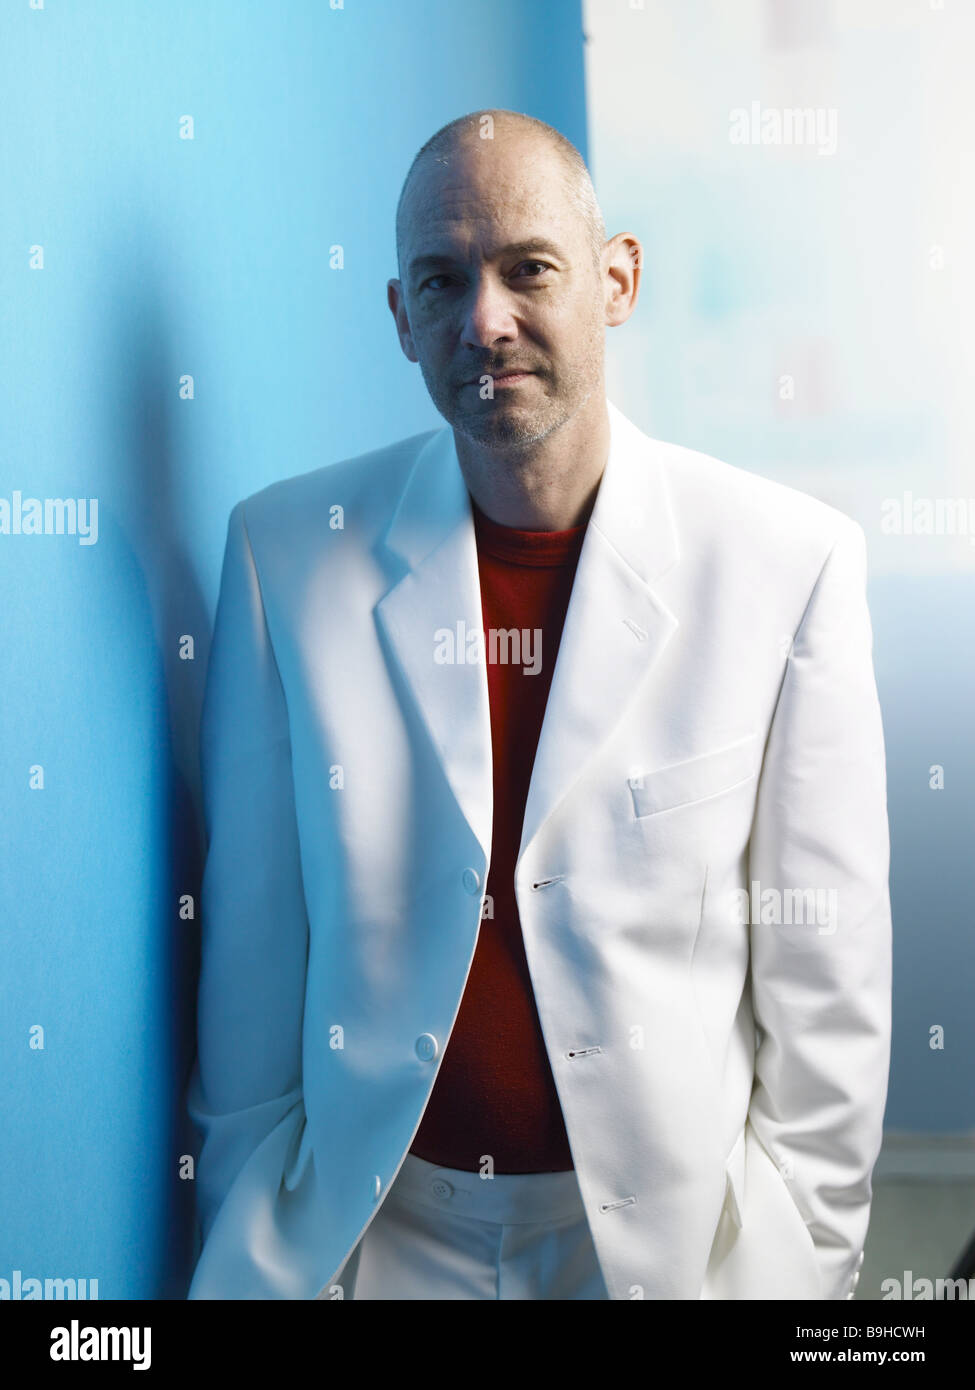 Glatze Mann Anzug ernst Detail, die Serie, die Menschen Designer Stoppeln  Zufriedenheit Gleichgewicht selbstbewusst Lächeln wartet wartet  Stockfotografie - Alamy